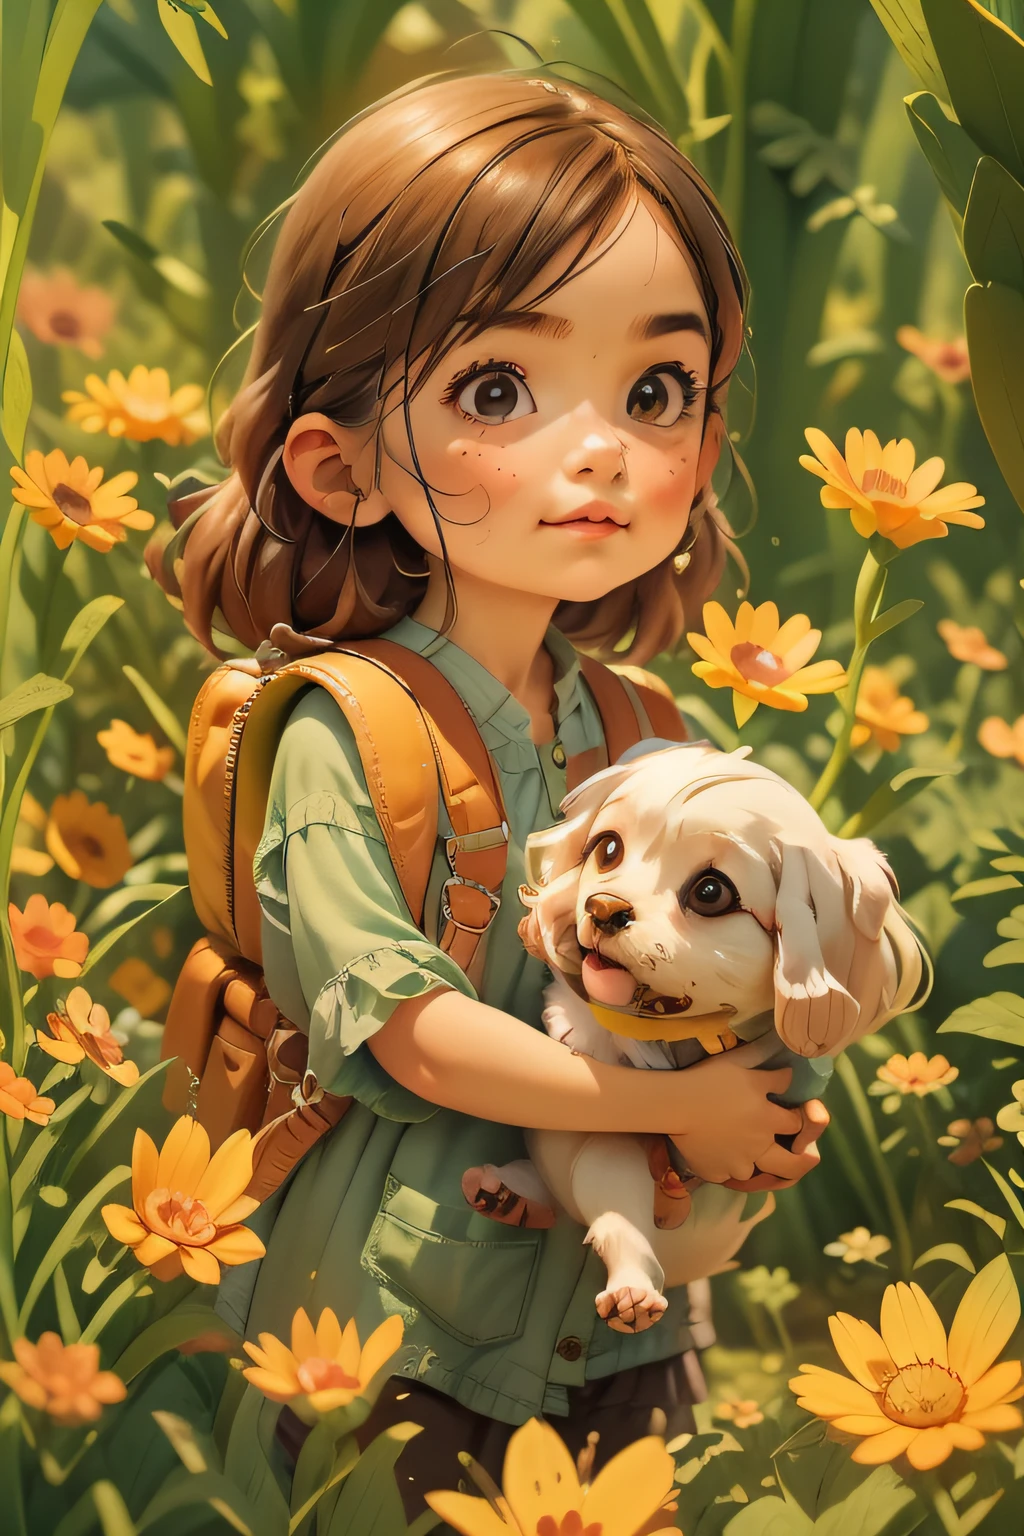 Eine sehr charmante Frau mit Rucksack und ihrem süßen kleinen Hund genießt einen schönen Frühlingsausflug umgeben von wunderschönen gelben Blumen und Natur. Die Illustration ist eine hochauflösende Illustration in 4K-Auflösung mit hochdetaillierten Gesichtszügen und Bildern im Cartoon-Stil.